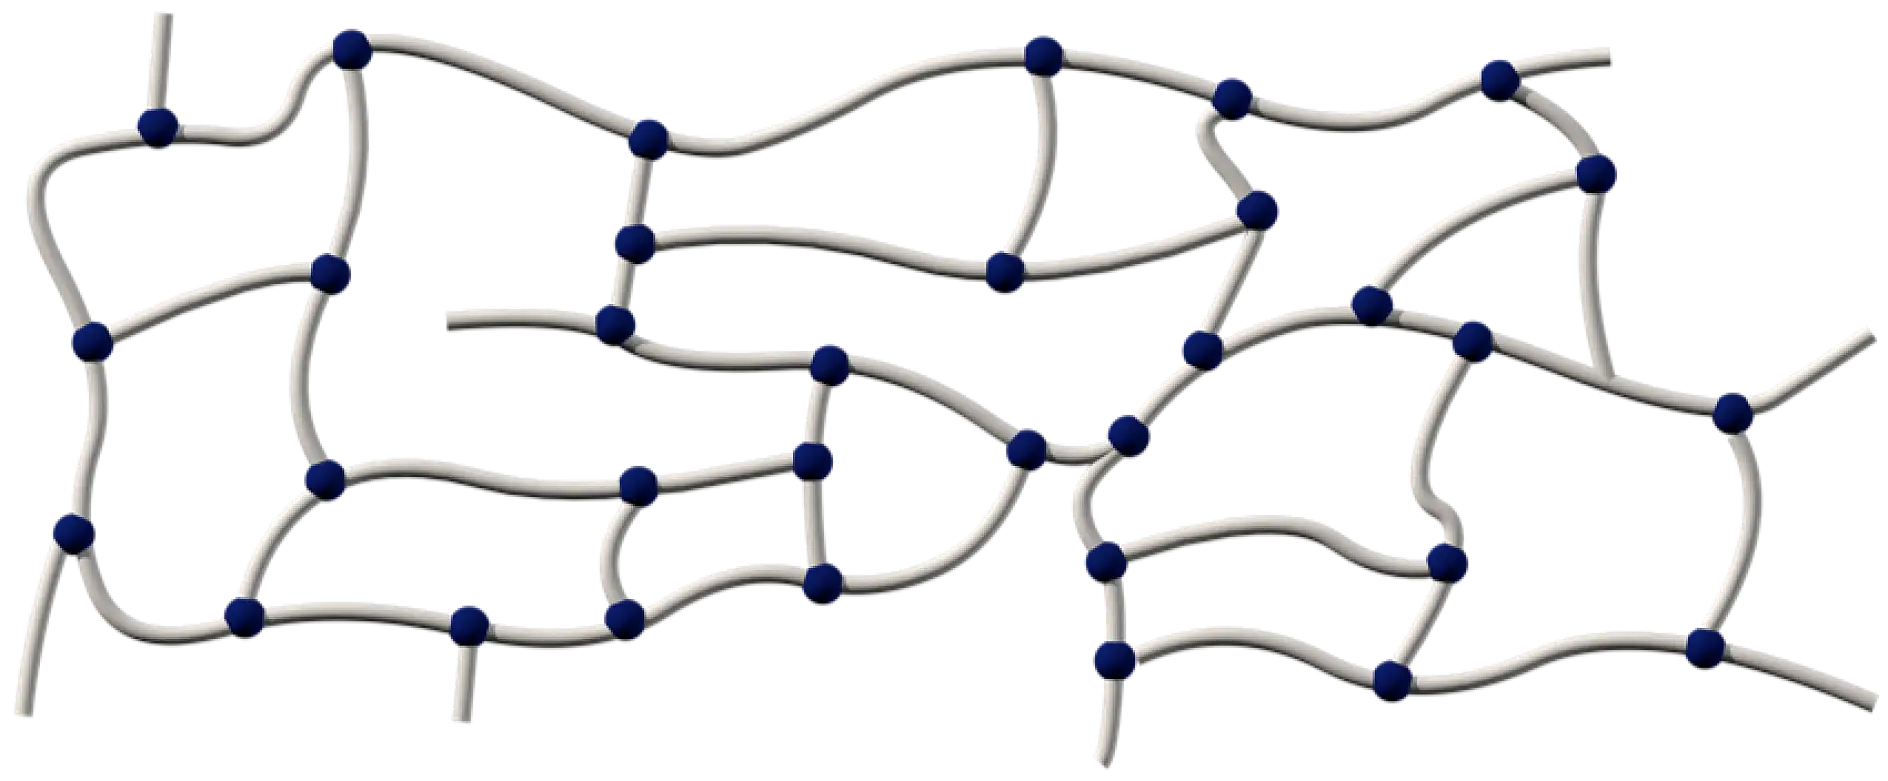 Akriliniai klijai susideda iš ilgų kryžmiškai susijungusių polimerų grandinių. Jos sujungiamos cheminiu būdu, naudojant ultravioletinę spinduliuotę arba kietinimo elektronų pluoštu metodą.